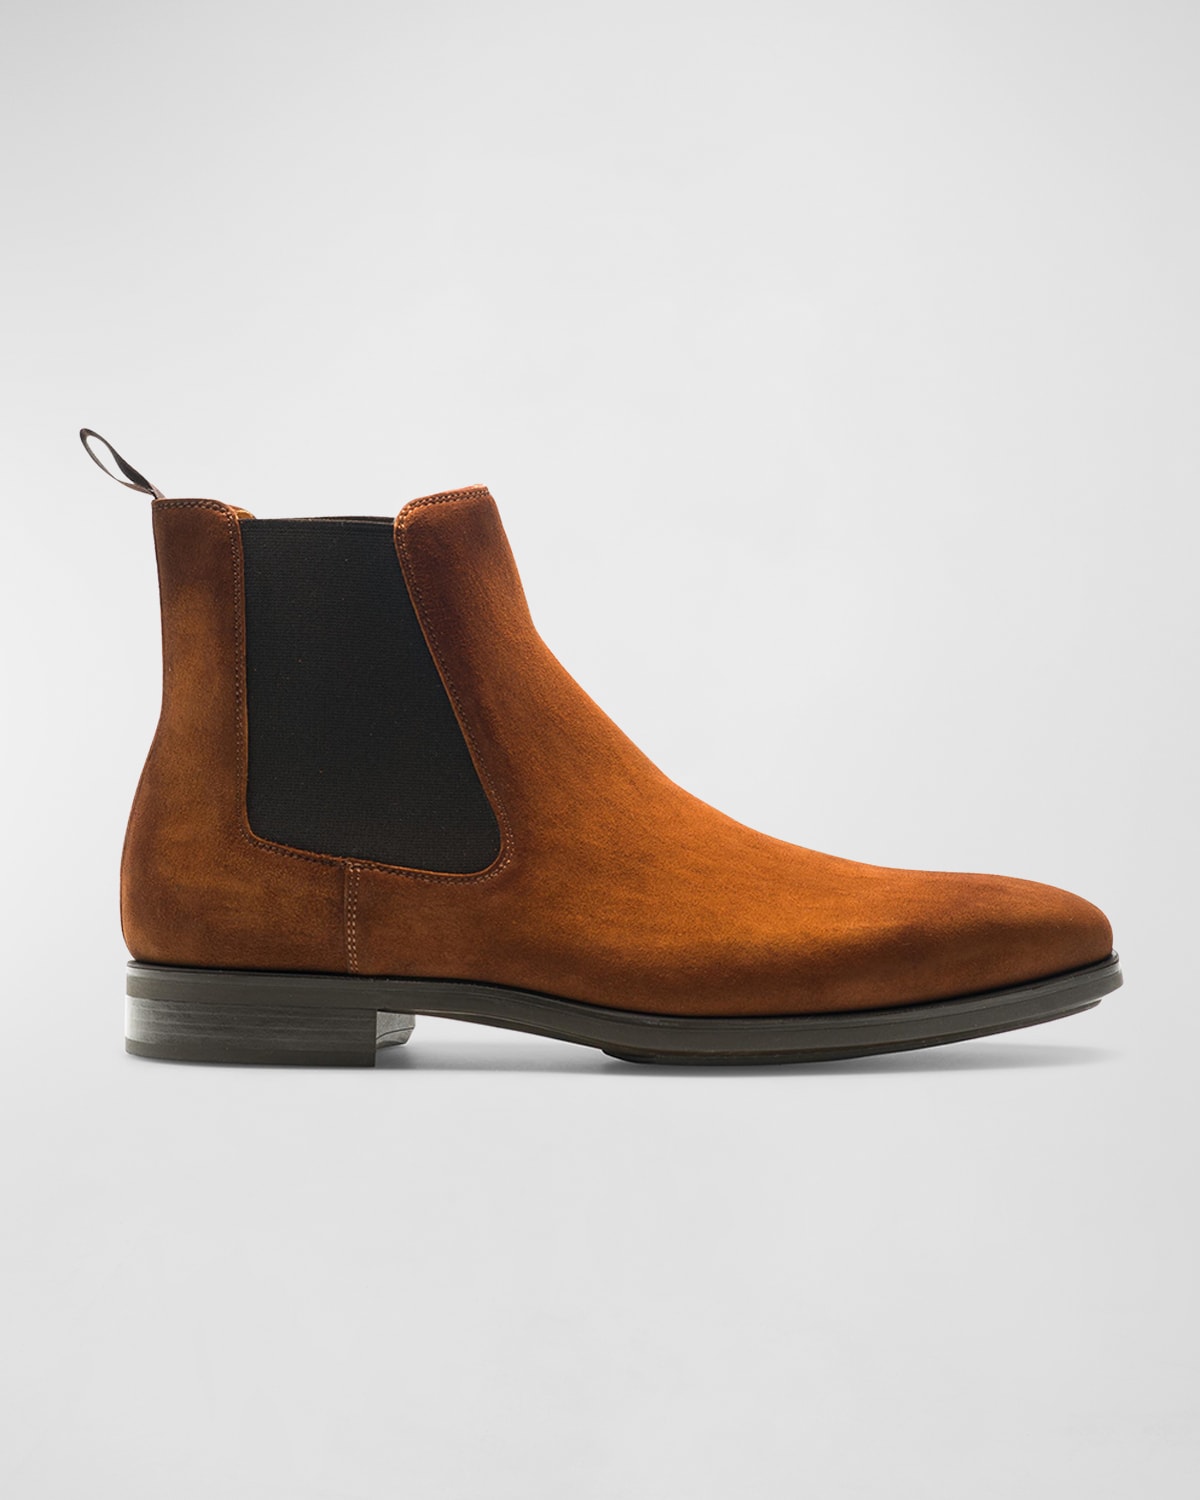 Magnanni Men's Caspe Double-Buckle Chelsea Boots | Neiman Marcus